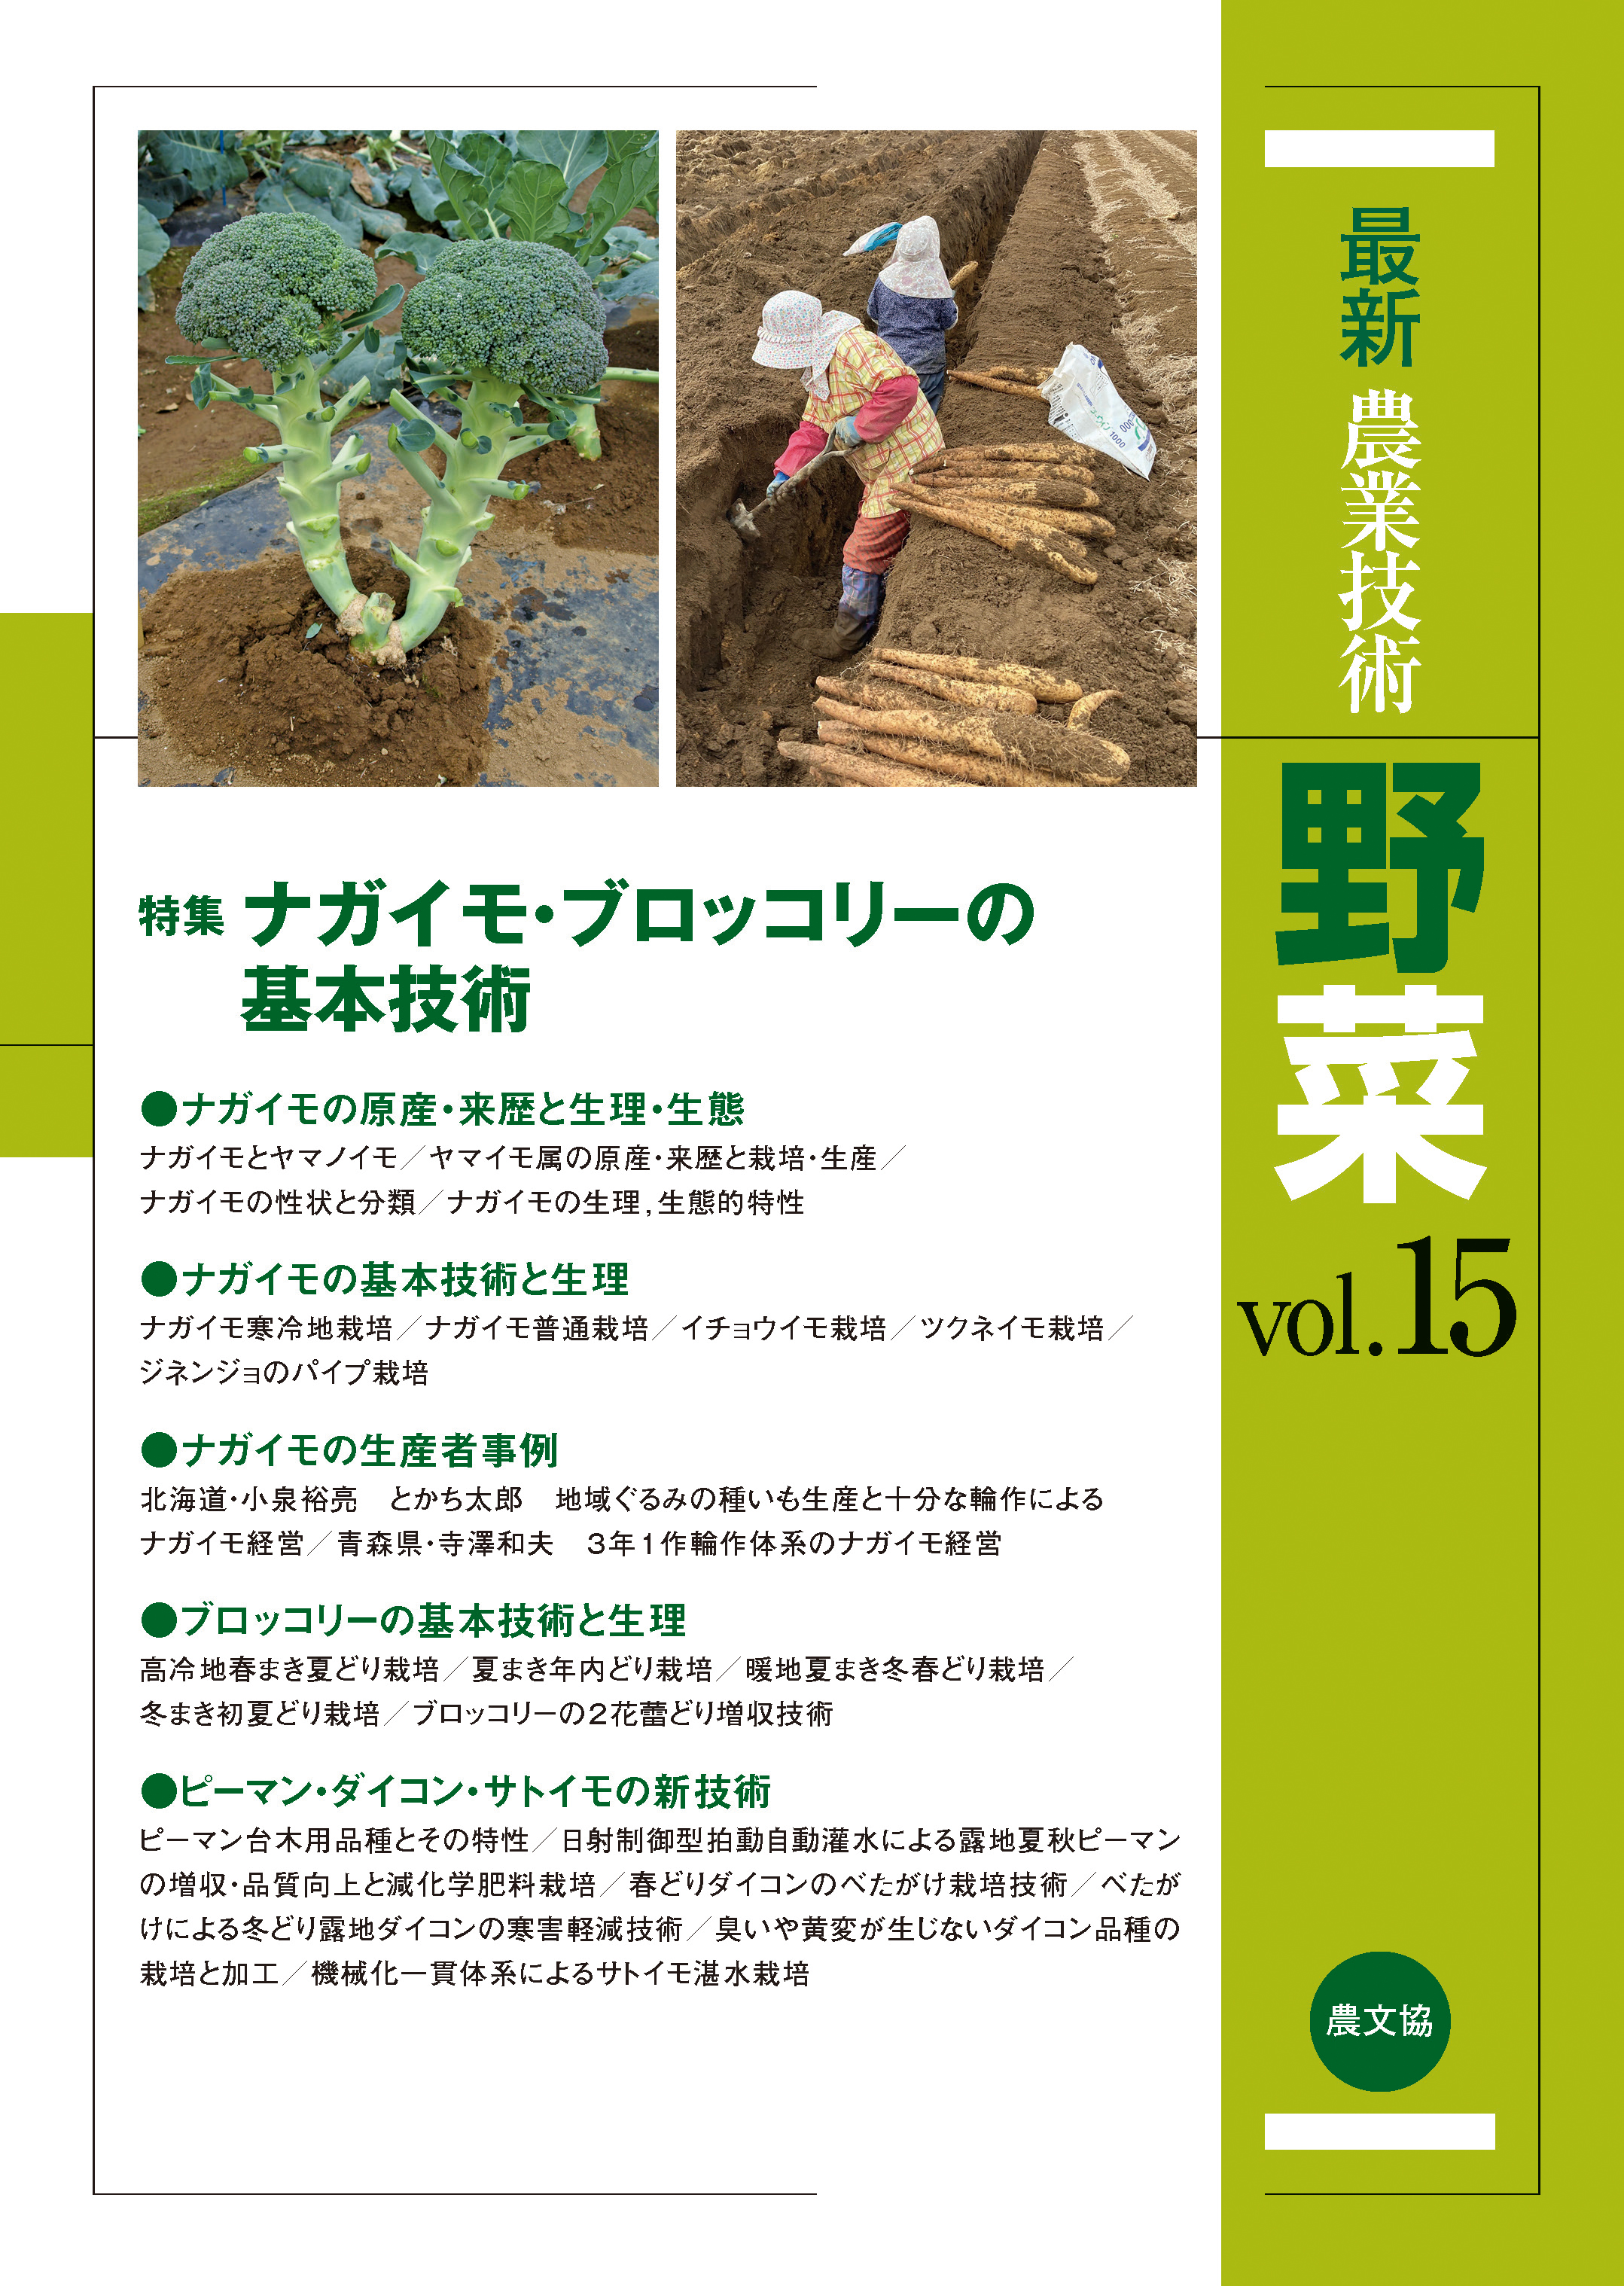 最新農業技術 野菜Vol.15(書籍) - 電子書籍 | U-NEXT 初回600円分無料